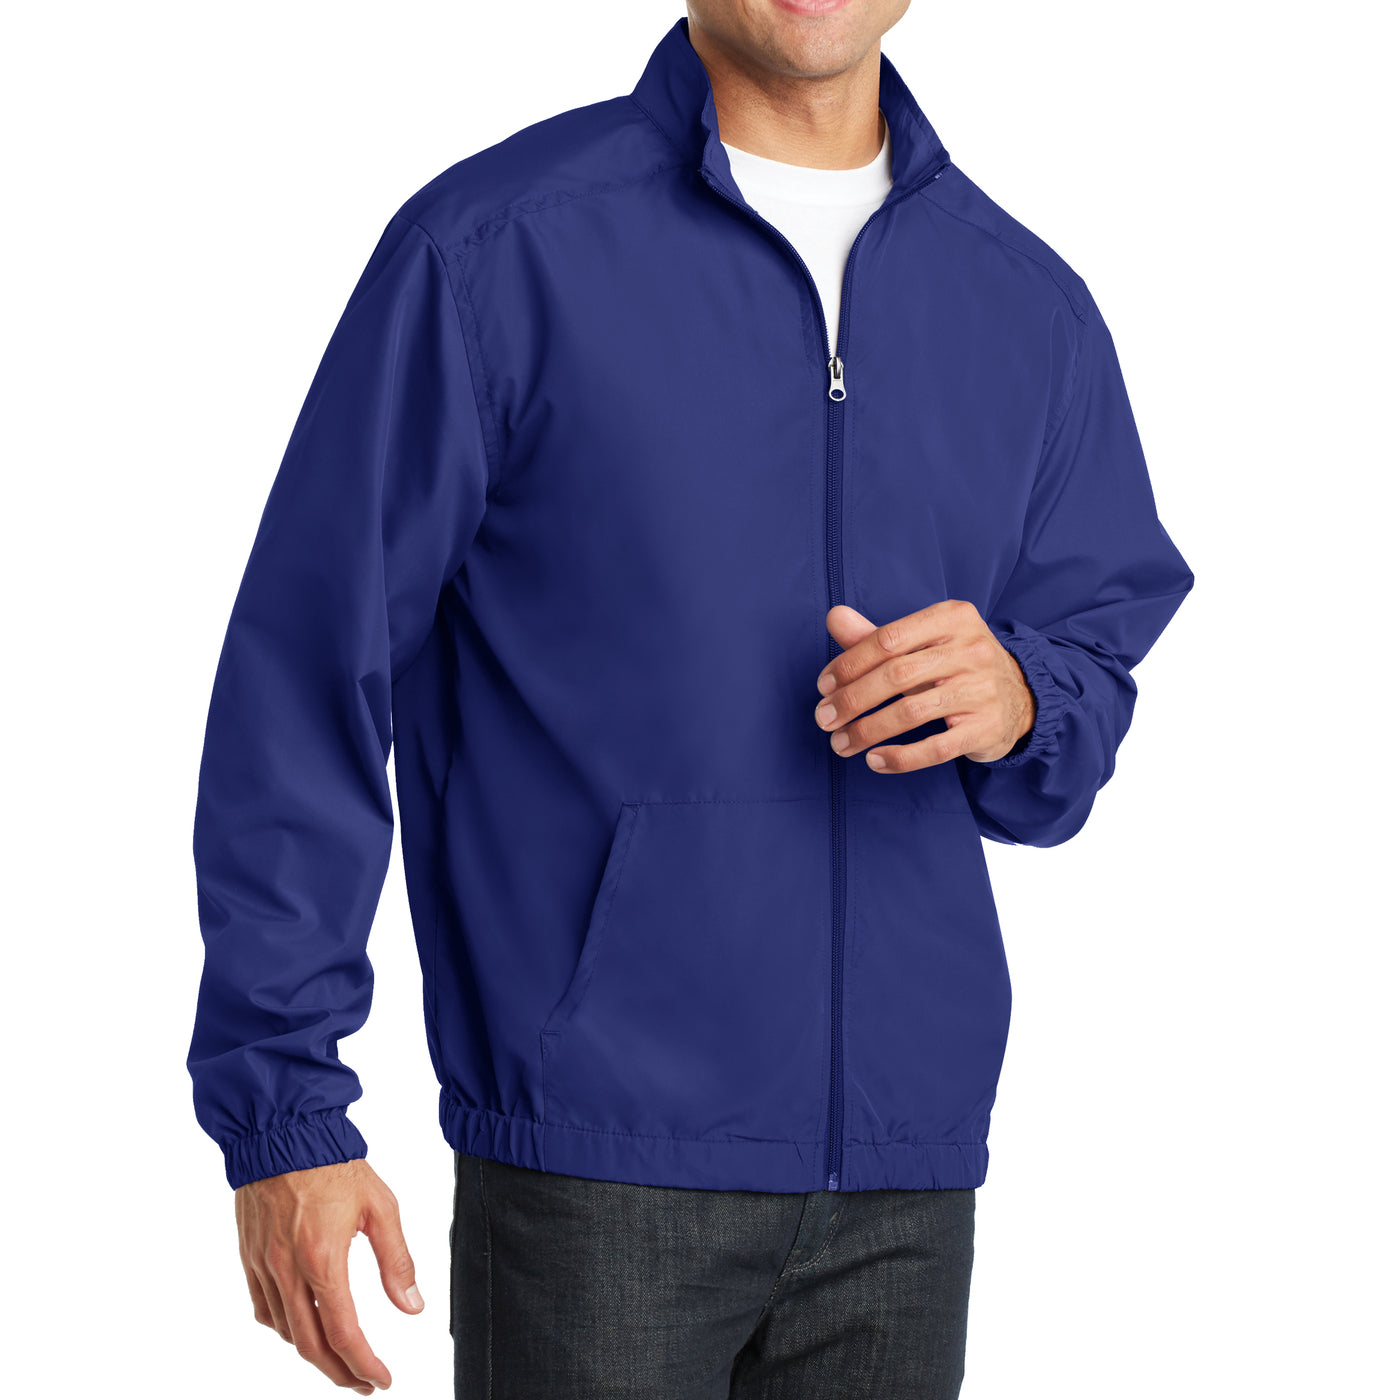 Men's Essential Jacket - Mediterranean Blue - Side